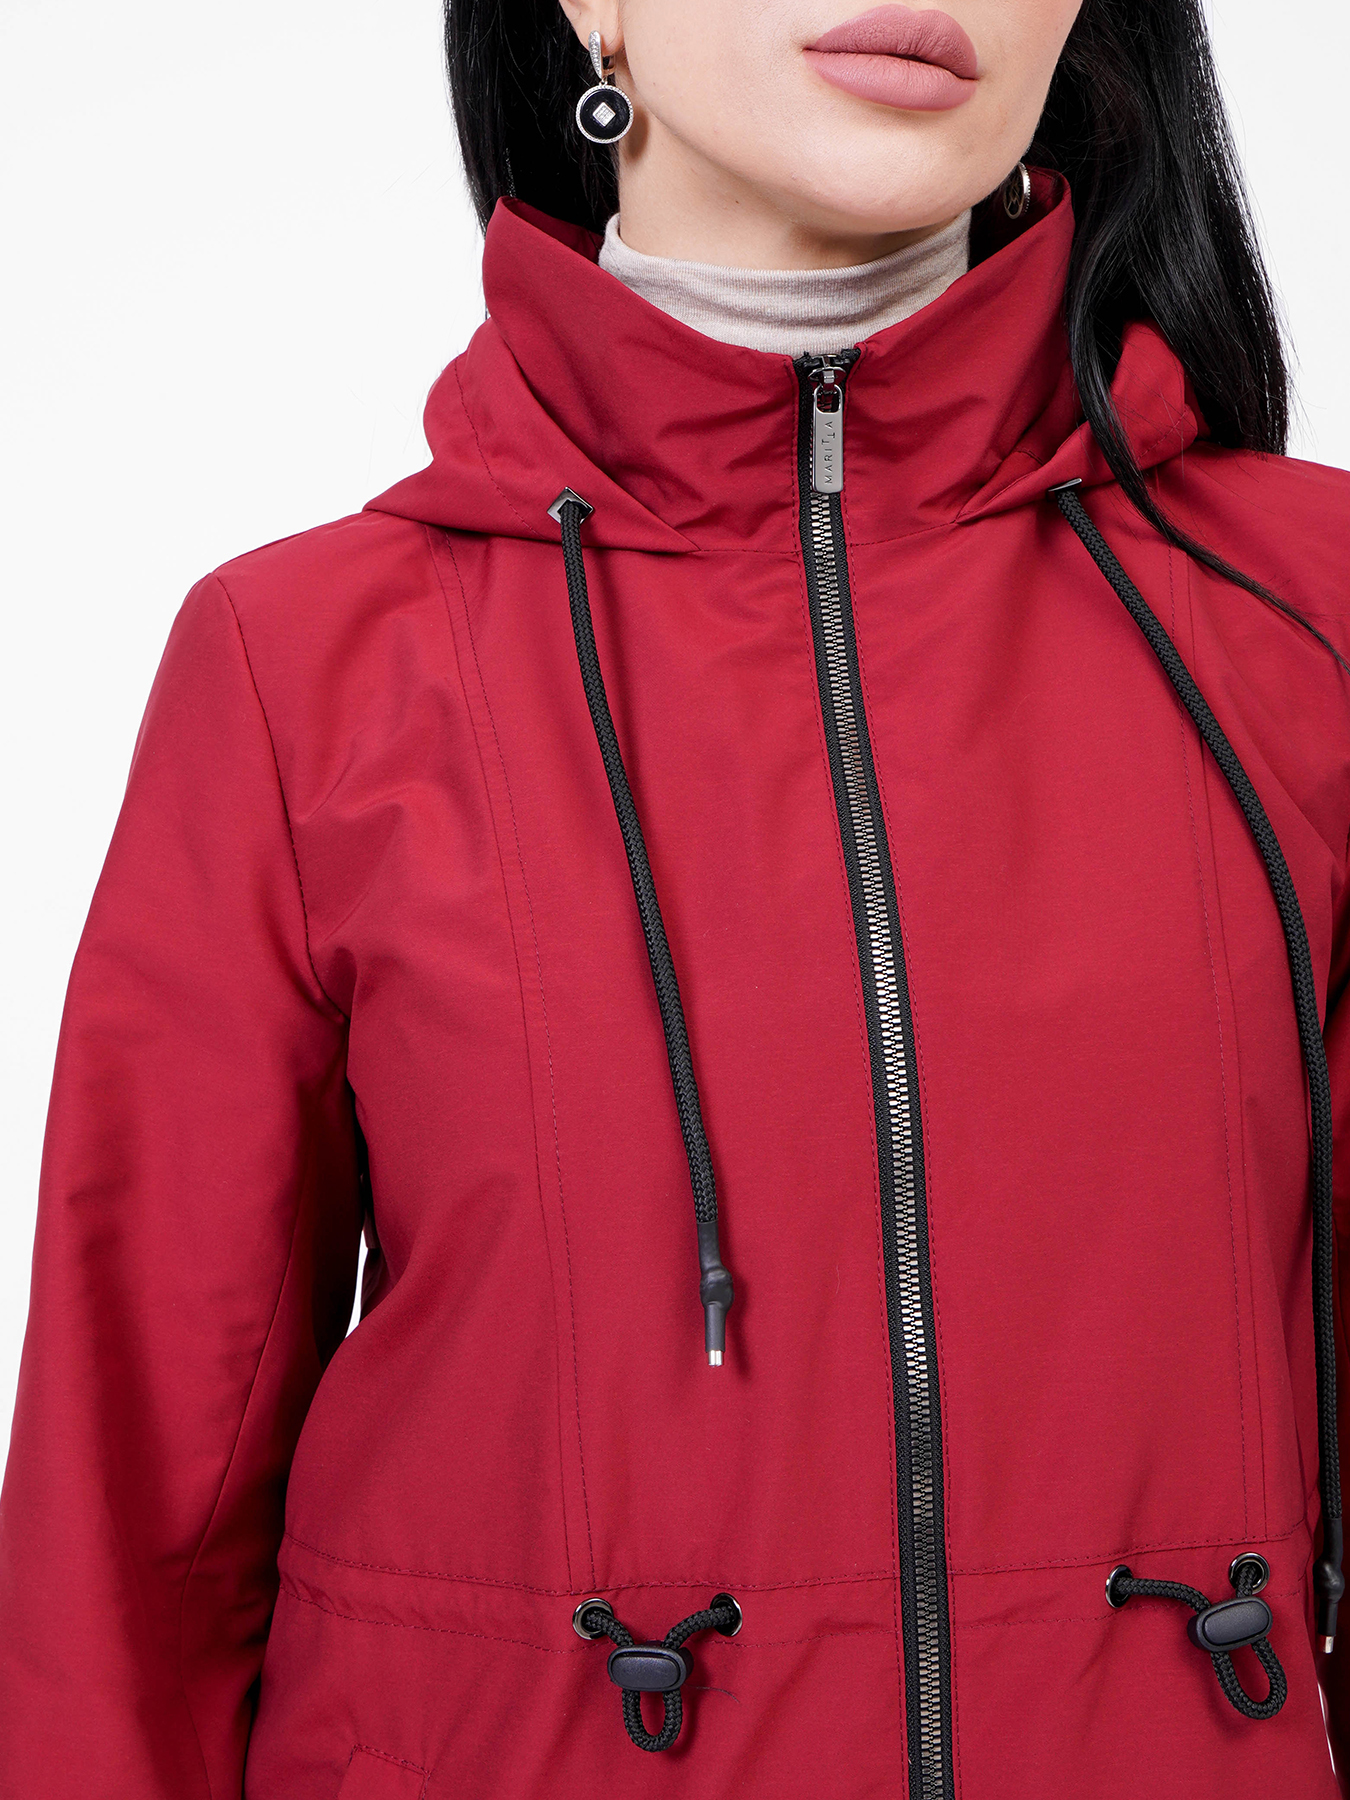 Куртка Maritta 418358-020, цвет красный, размер 44 - фото 3